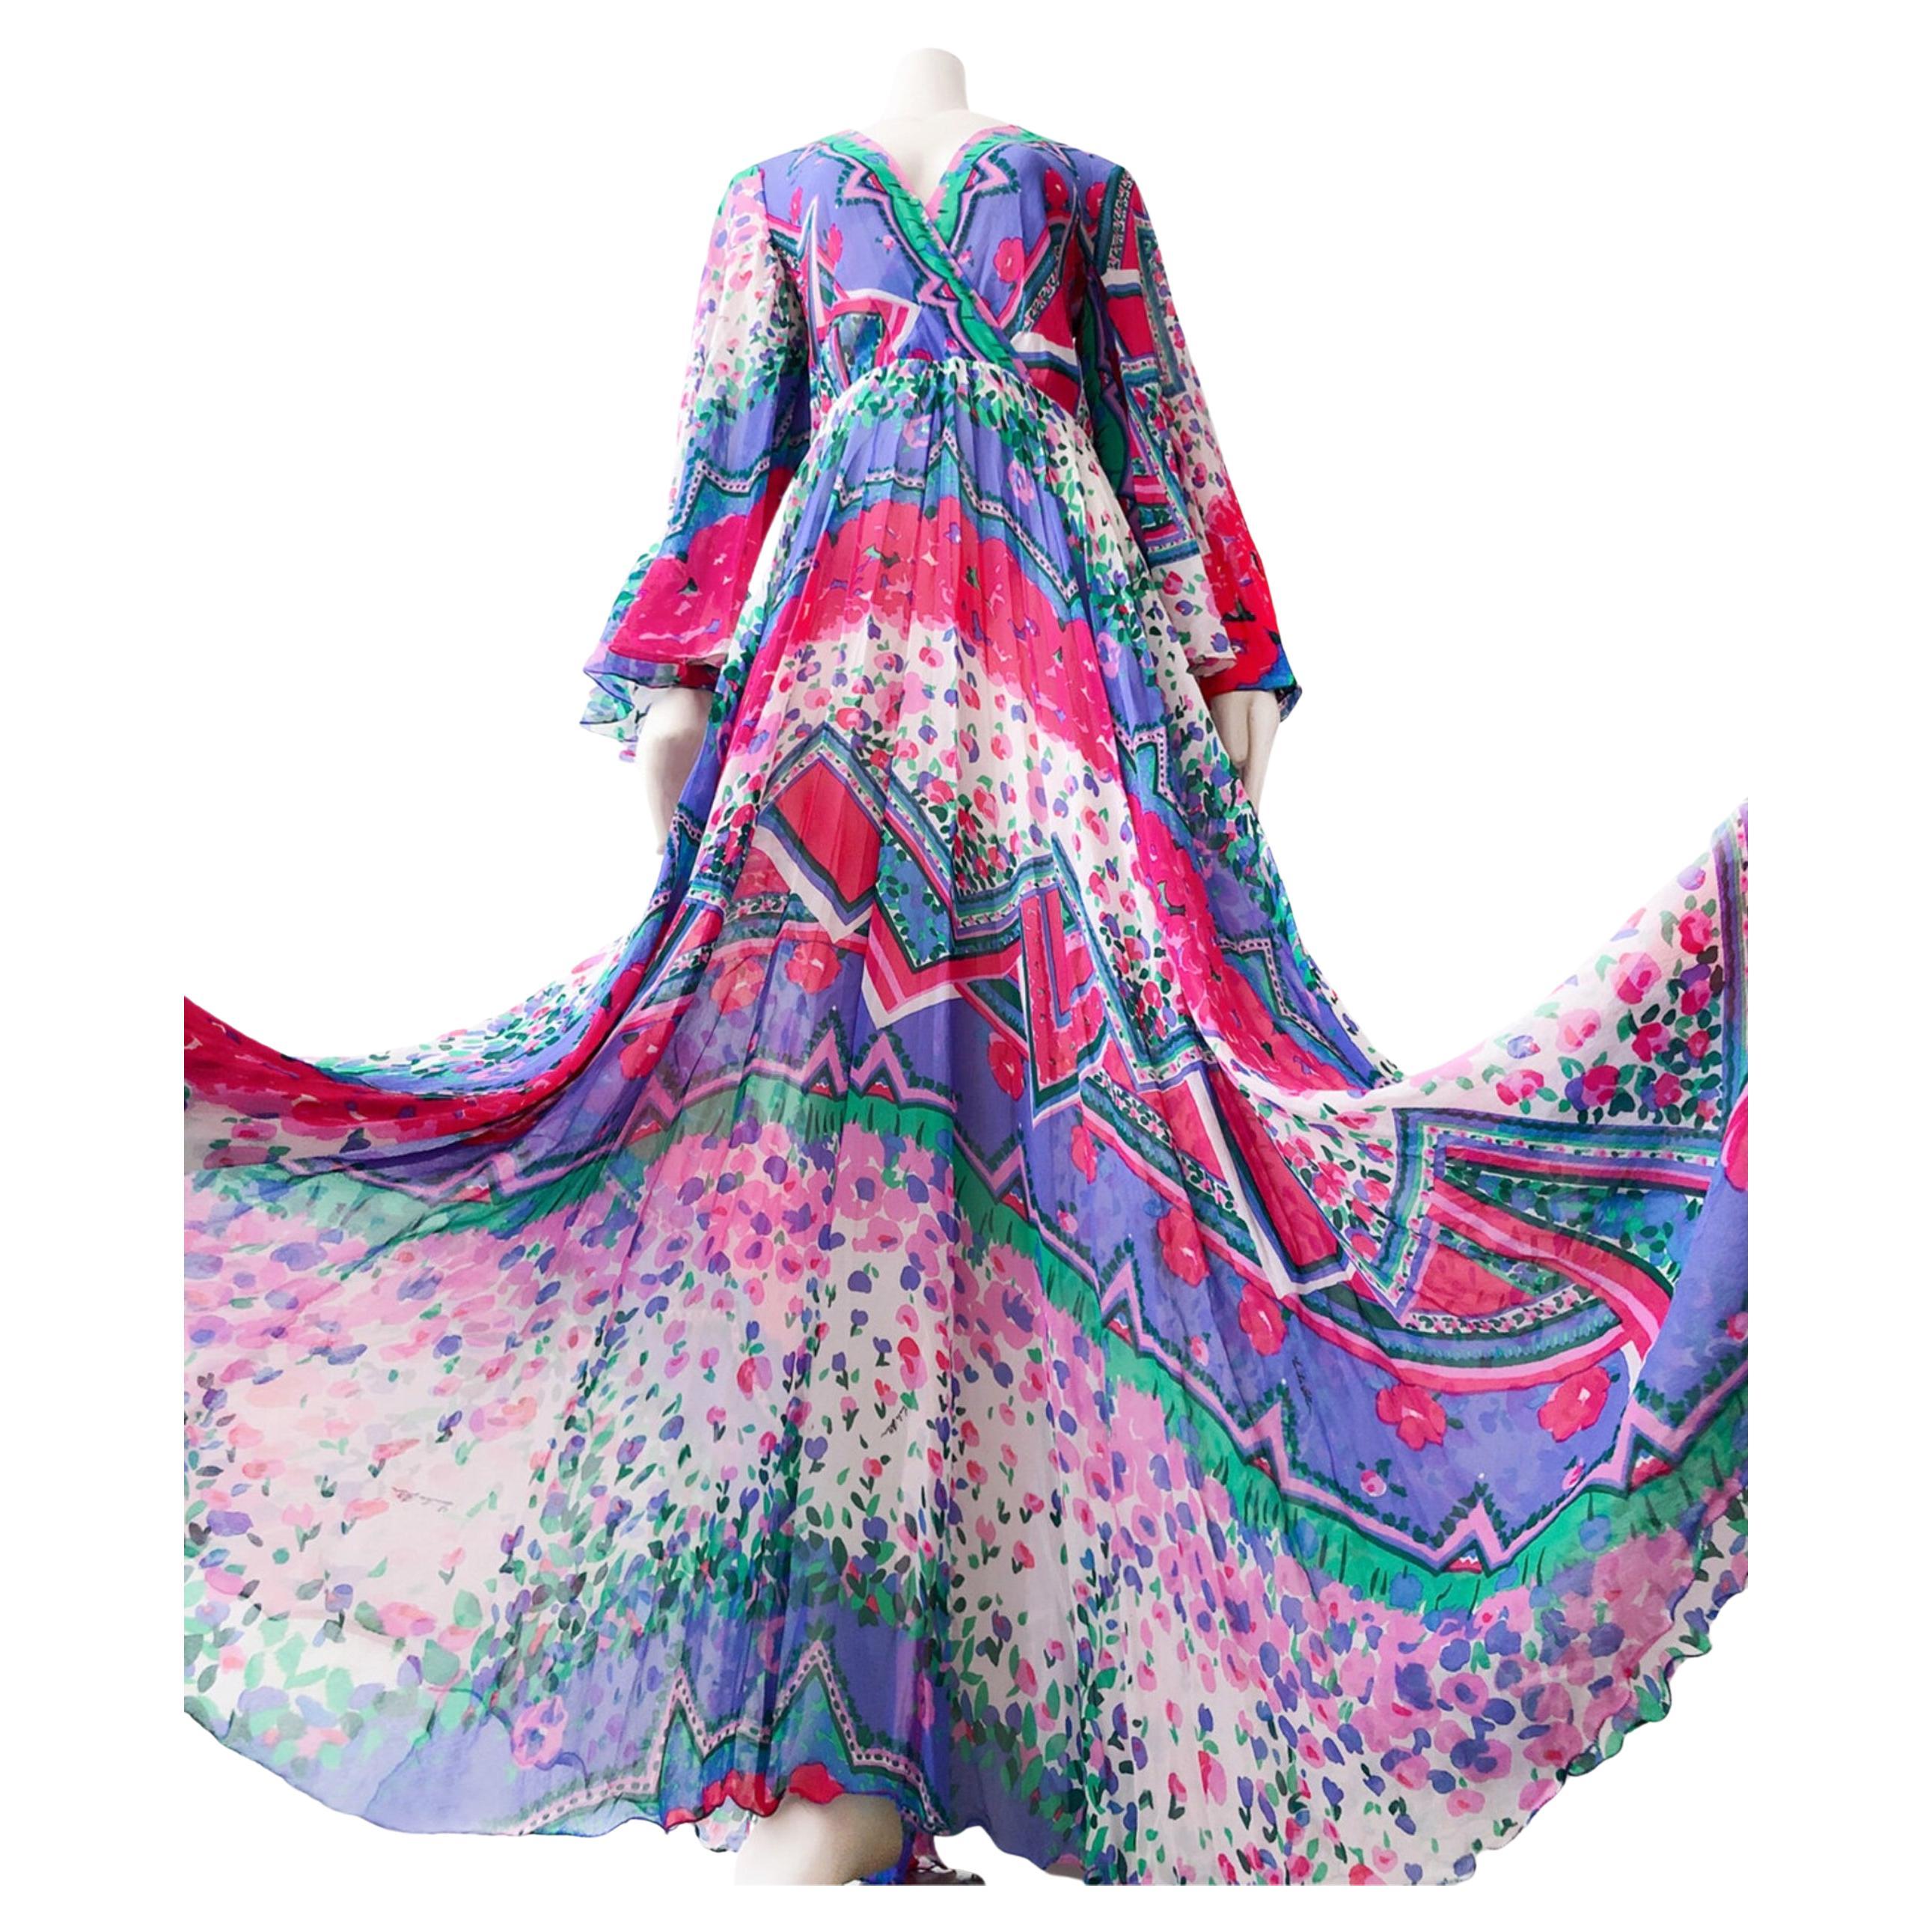 
Amazing Vintage Emilia Bellini ca.1960's Unterschrift drucken reine Seide Maxikleid. Hochwertiges, sehr seltenes Vintage-Designer-Kleid.
Die Form ist wirklich erstaunlich - eine wahre Göttin. Es ist ein langes Maxikleid mit superweitem Rock, die